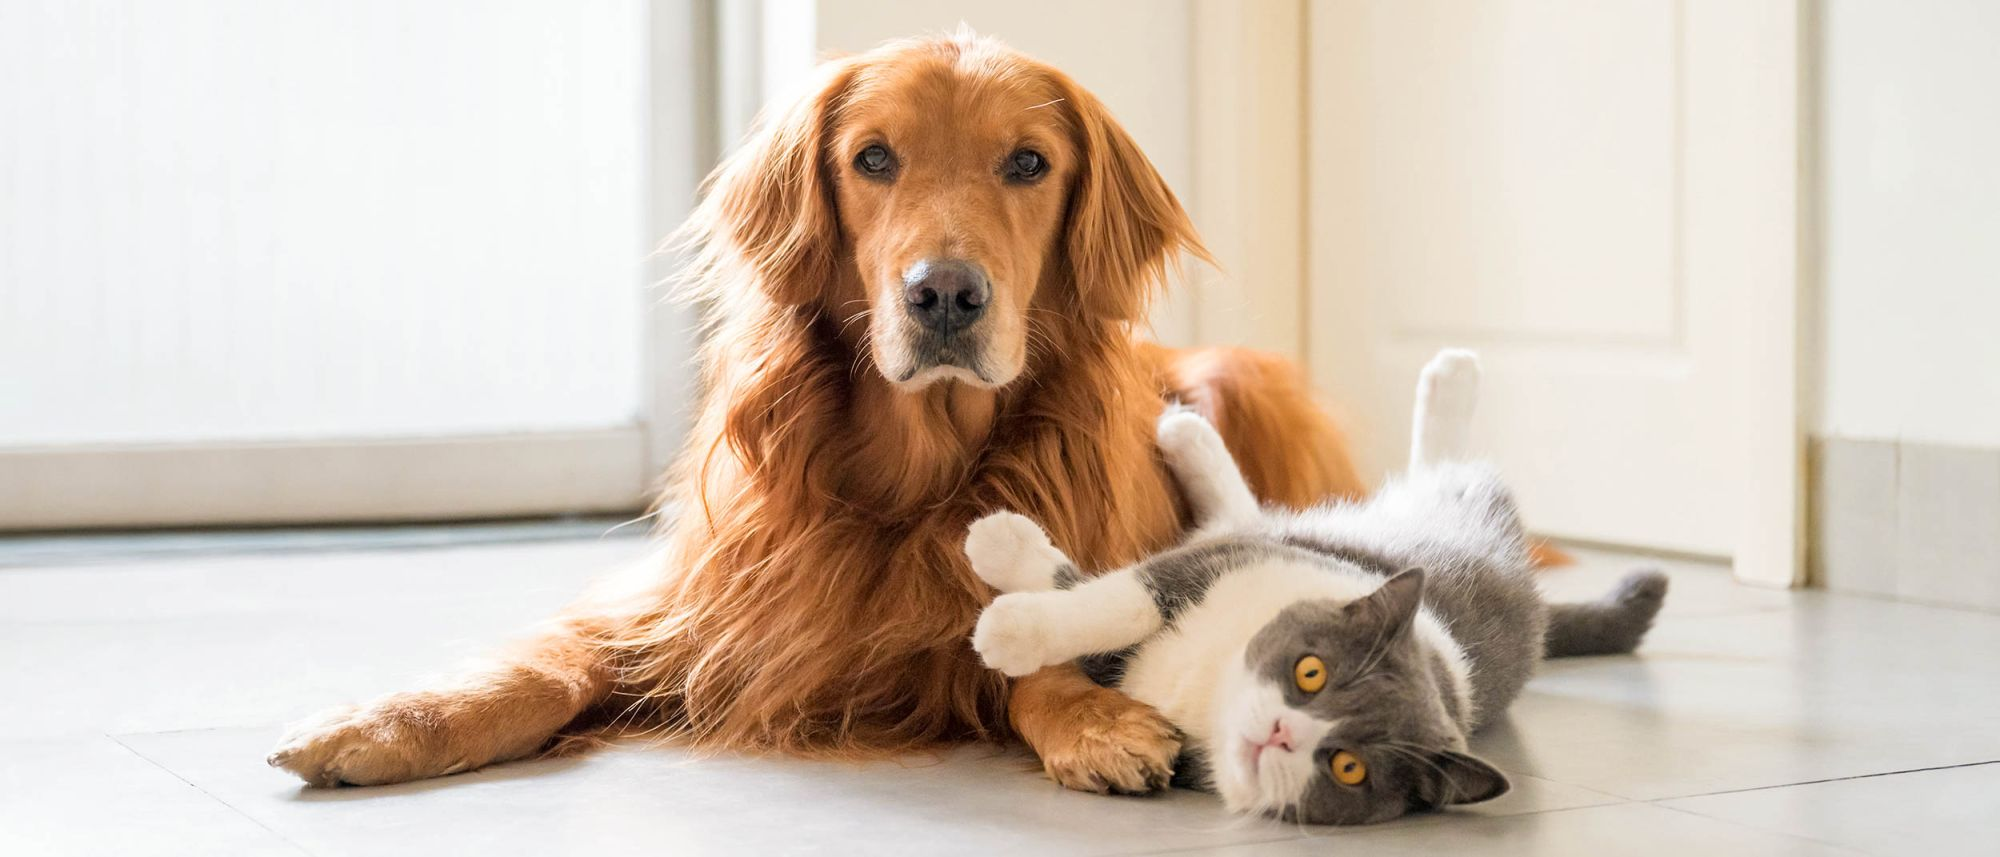 Ausgewachsene Katze und Hund liegen zusammen drinnen auf einem Küchenboden